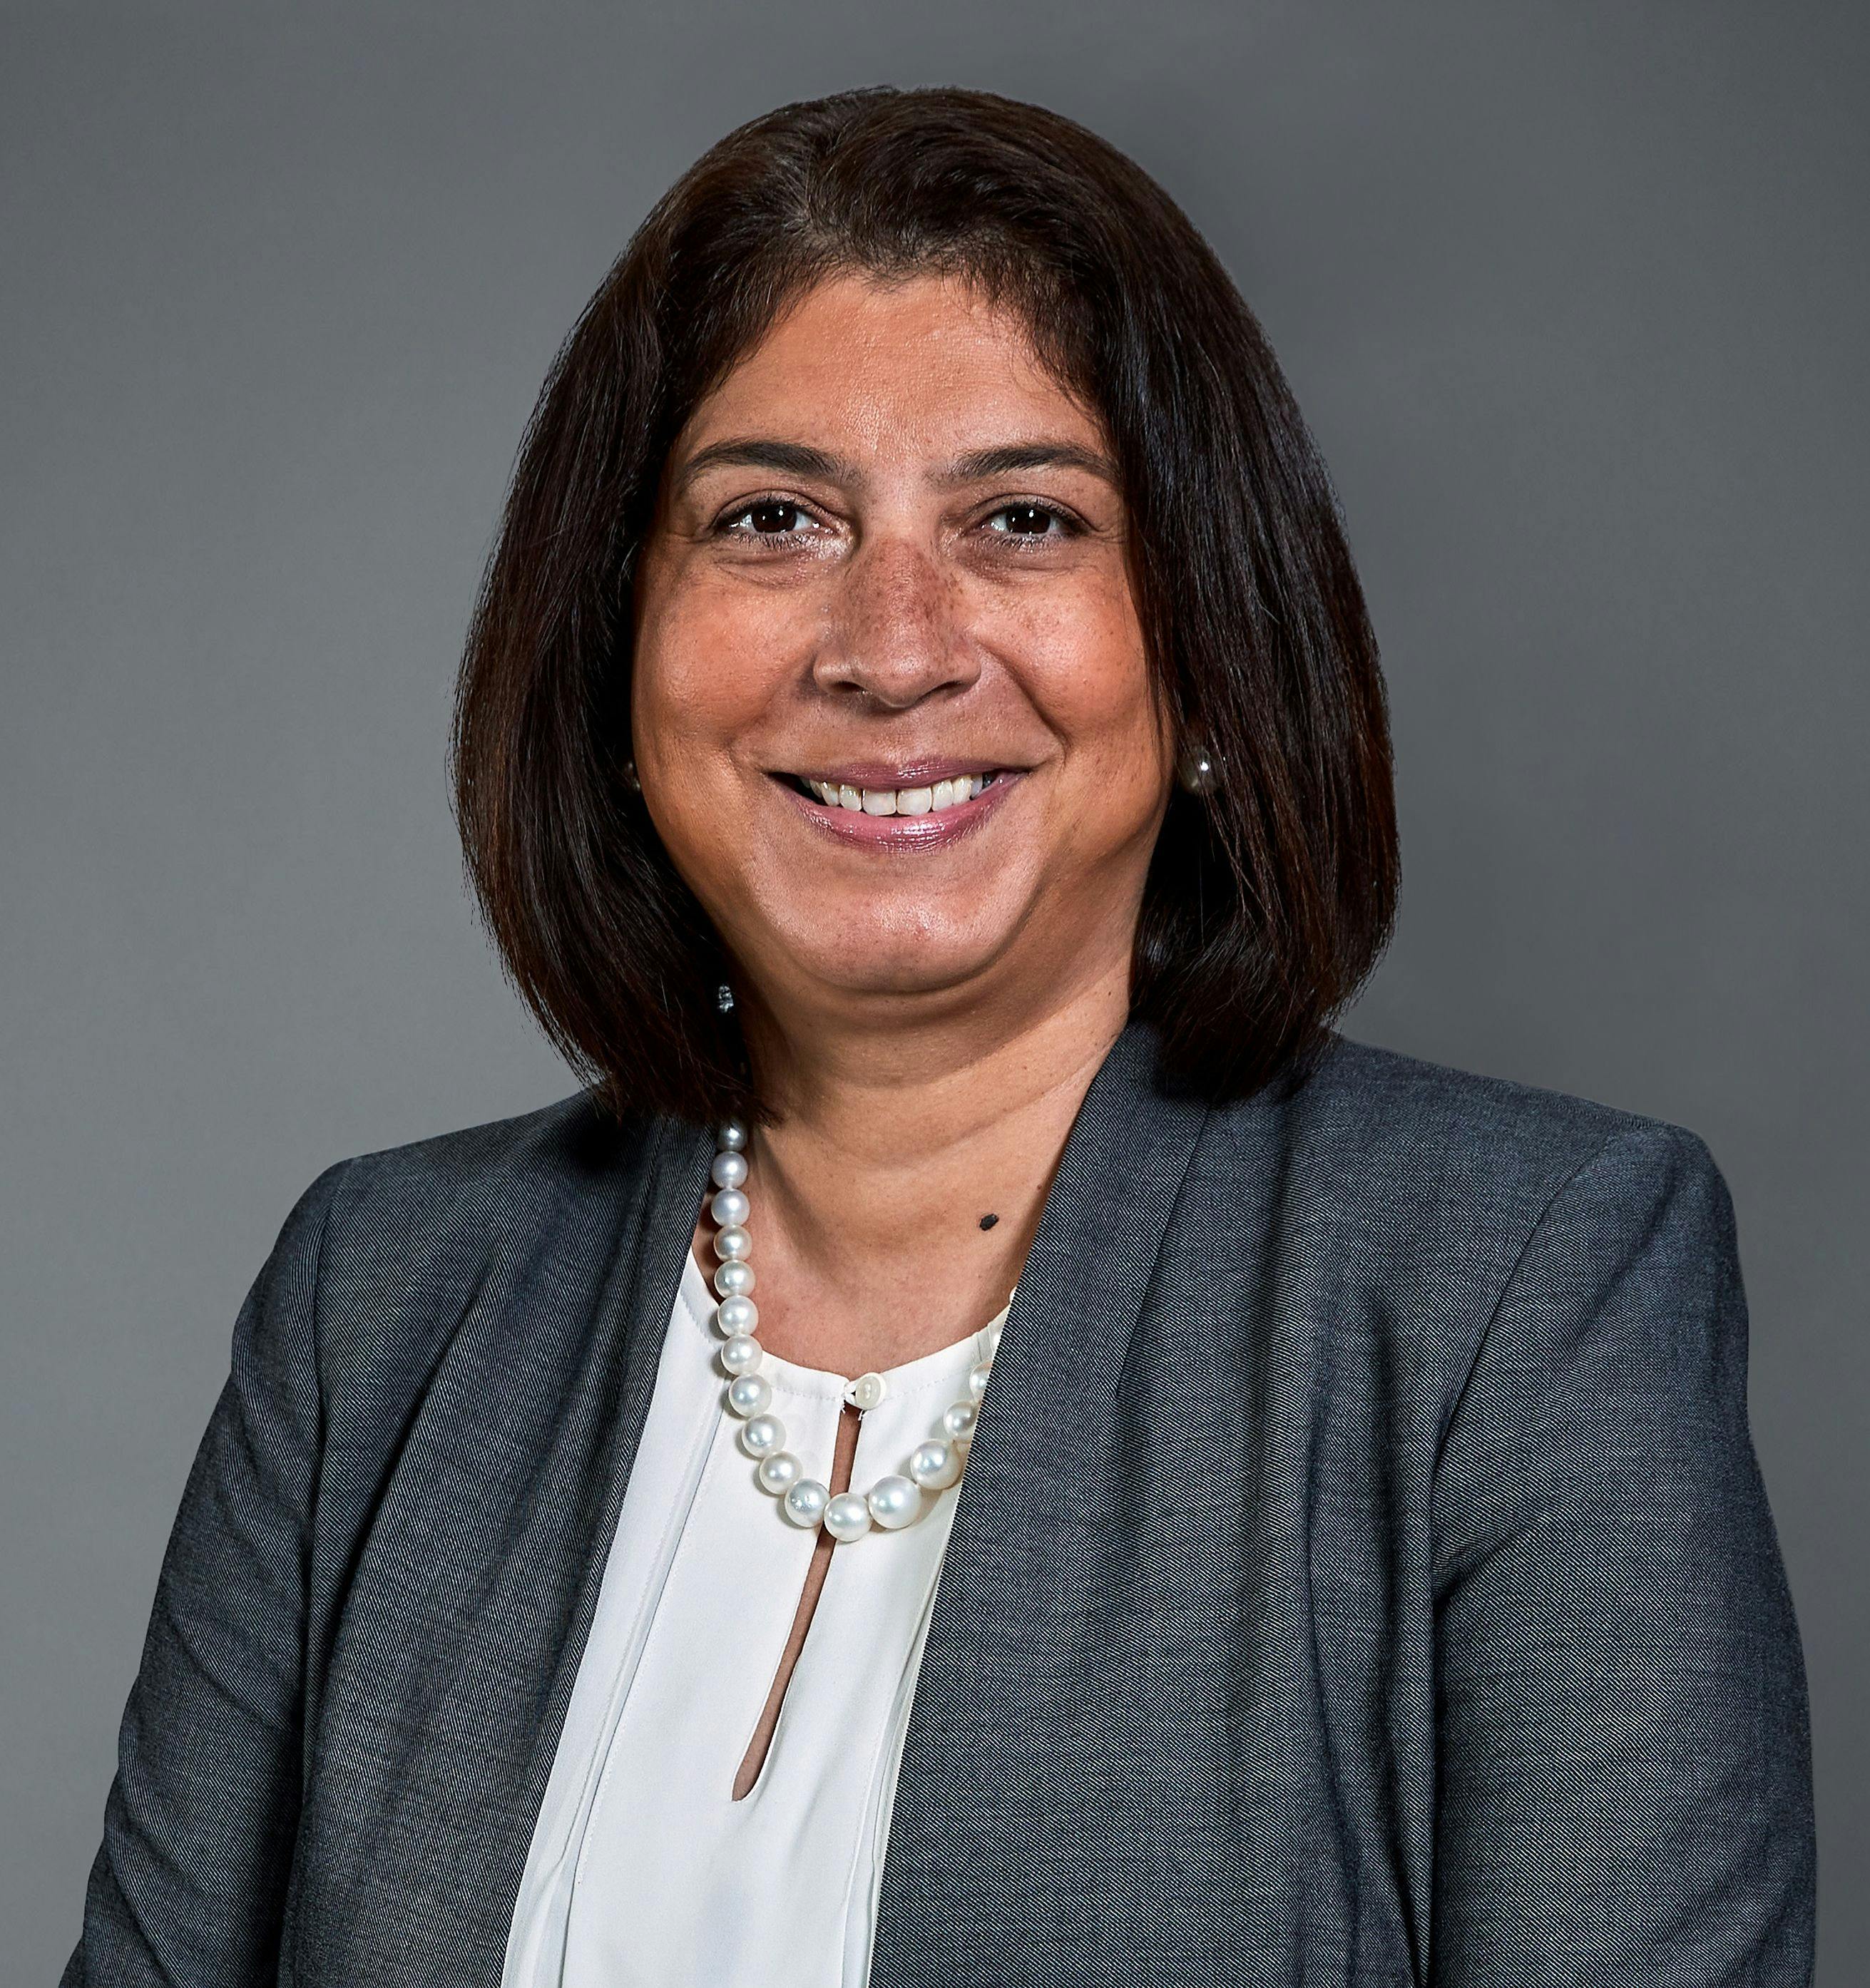 Reshma Kewalramani, MD, FASN